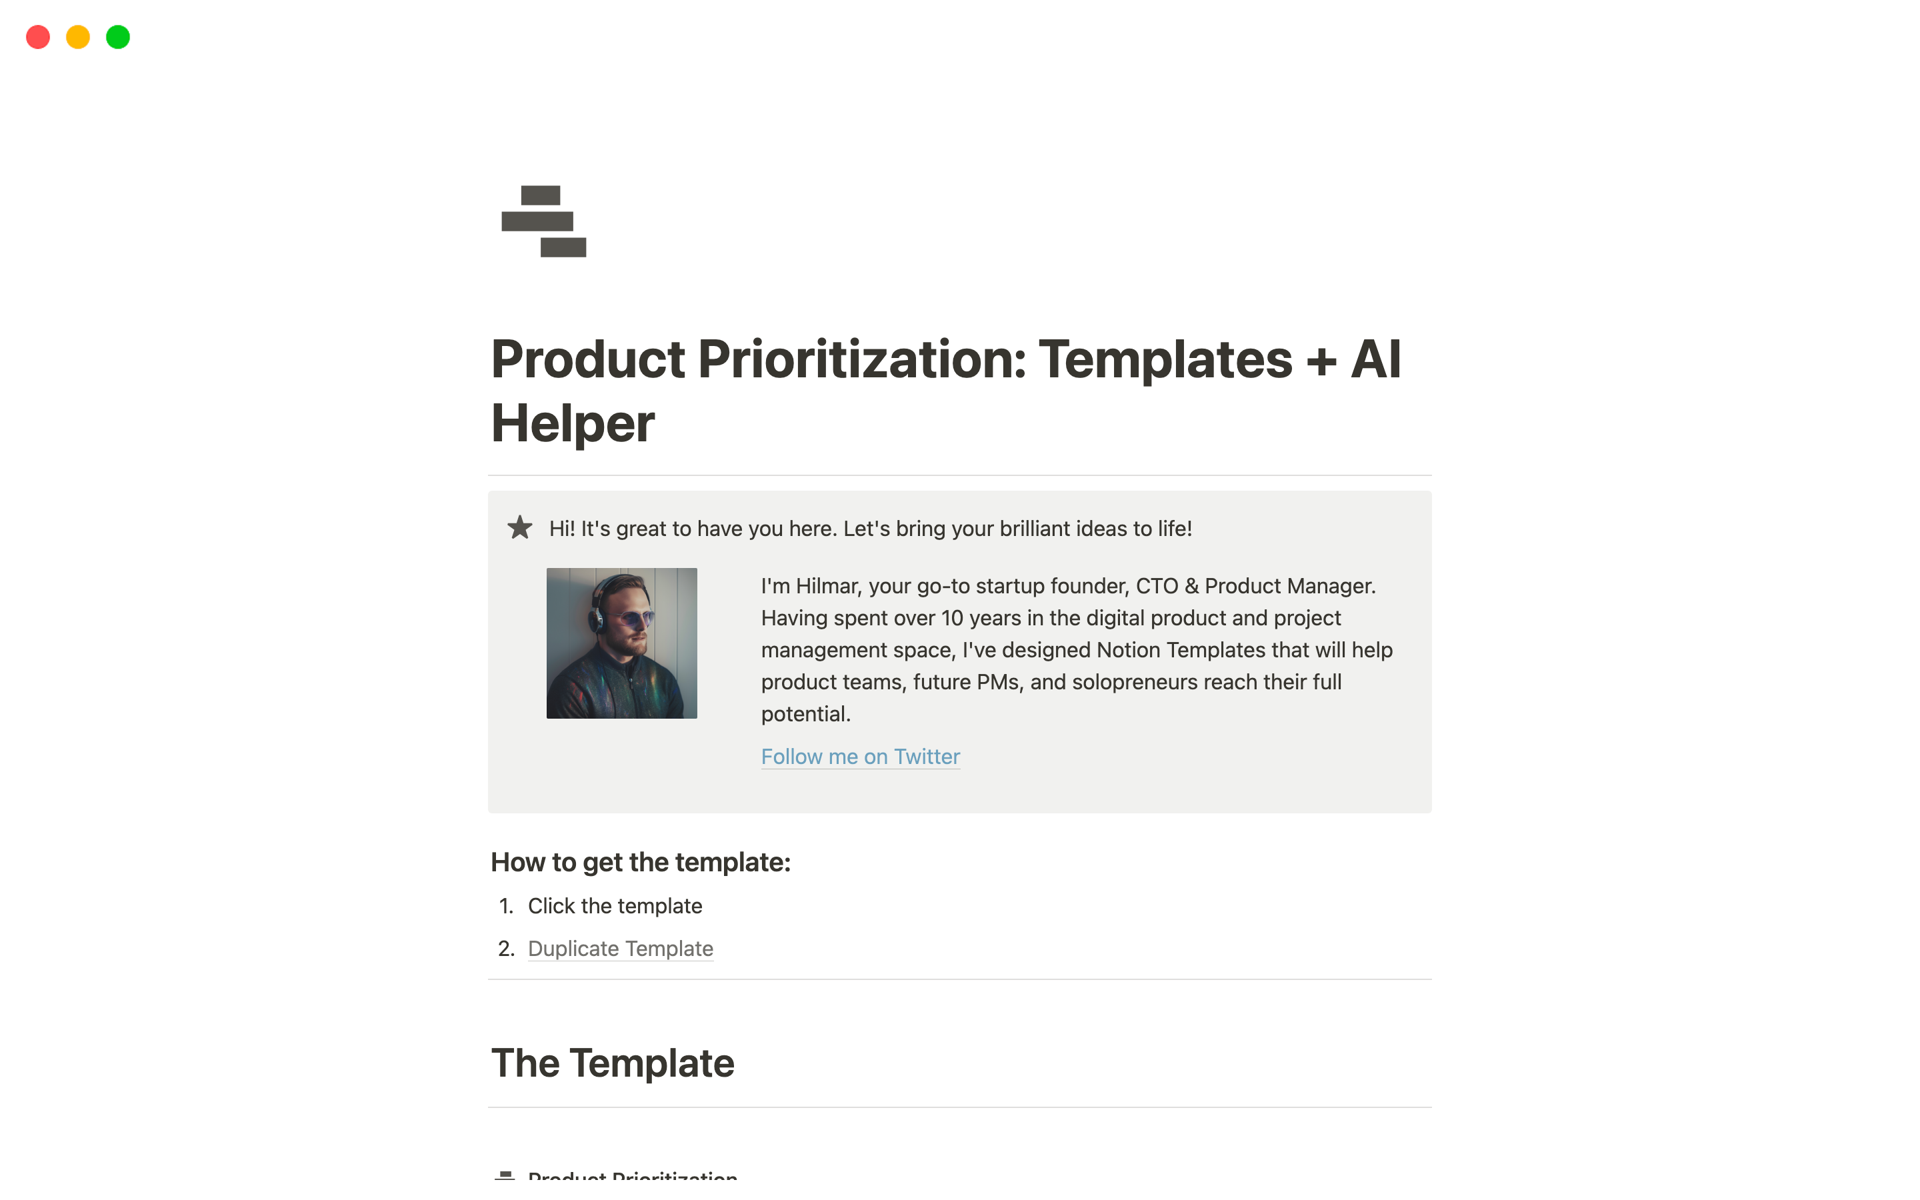 Uma prévia do modelo para Product Prioritization: Templates + AI Helper